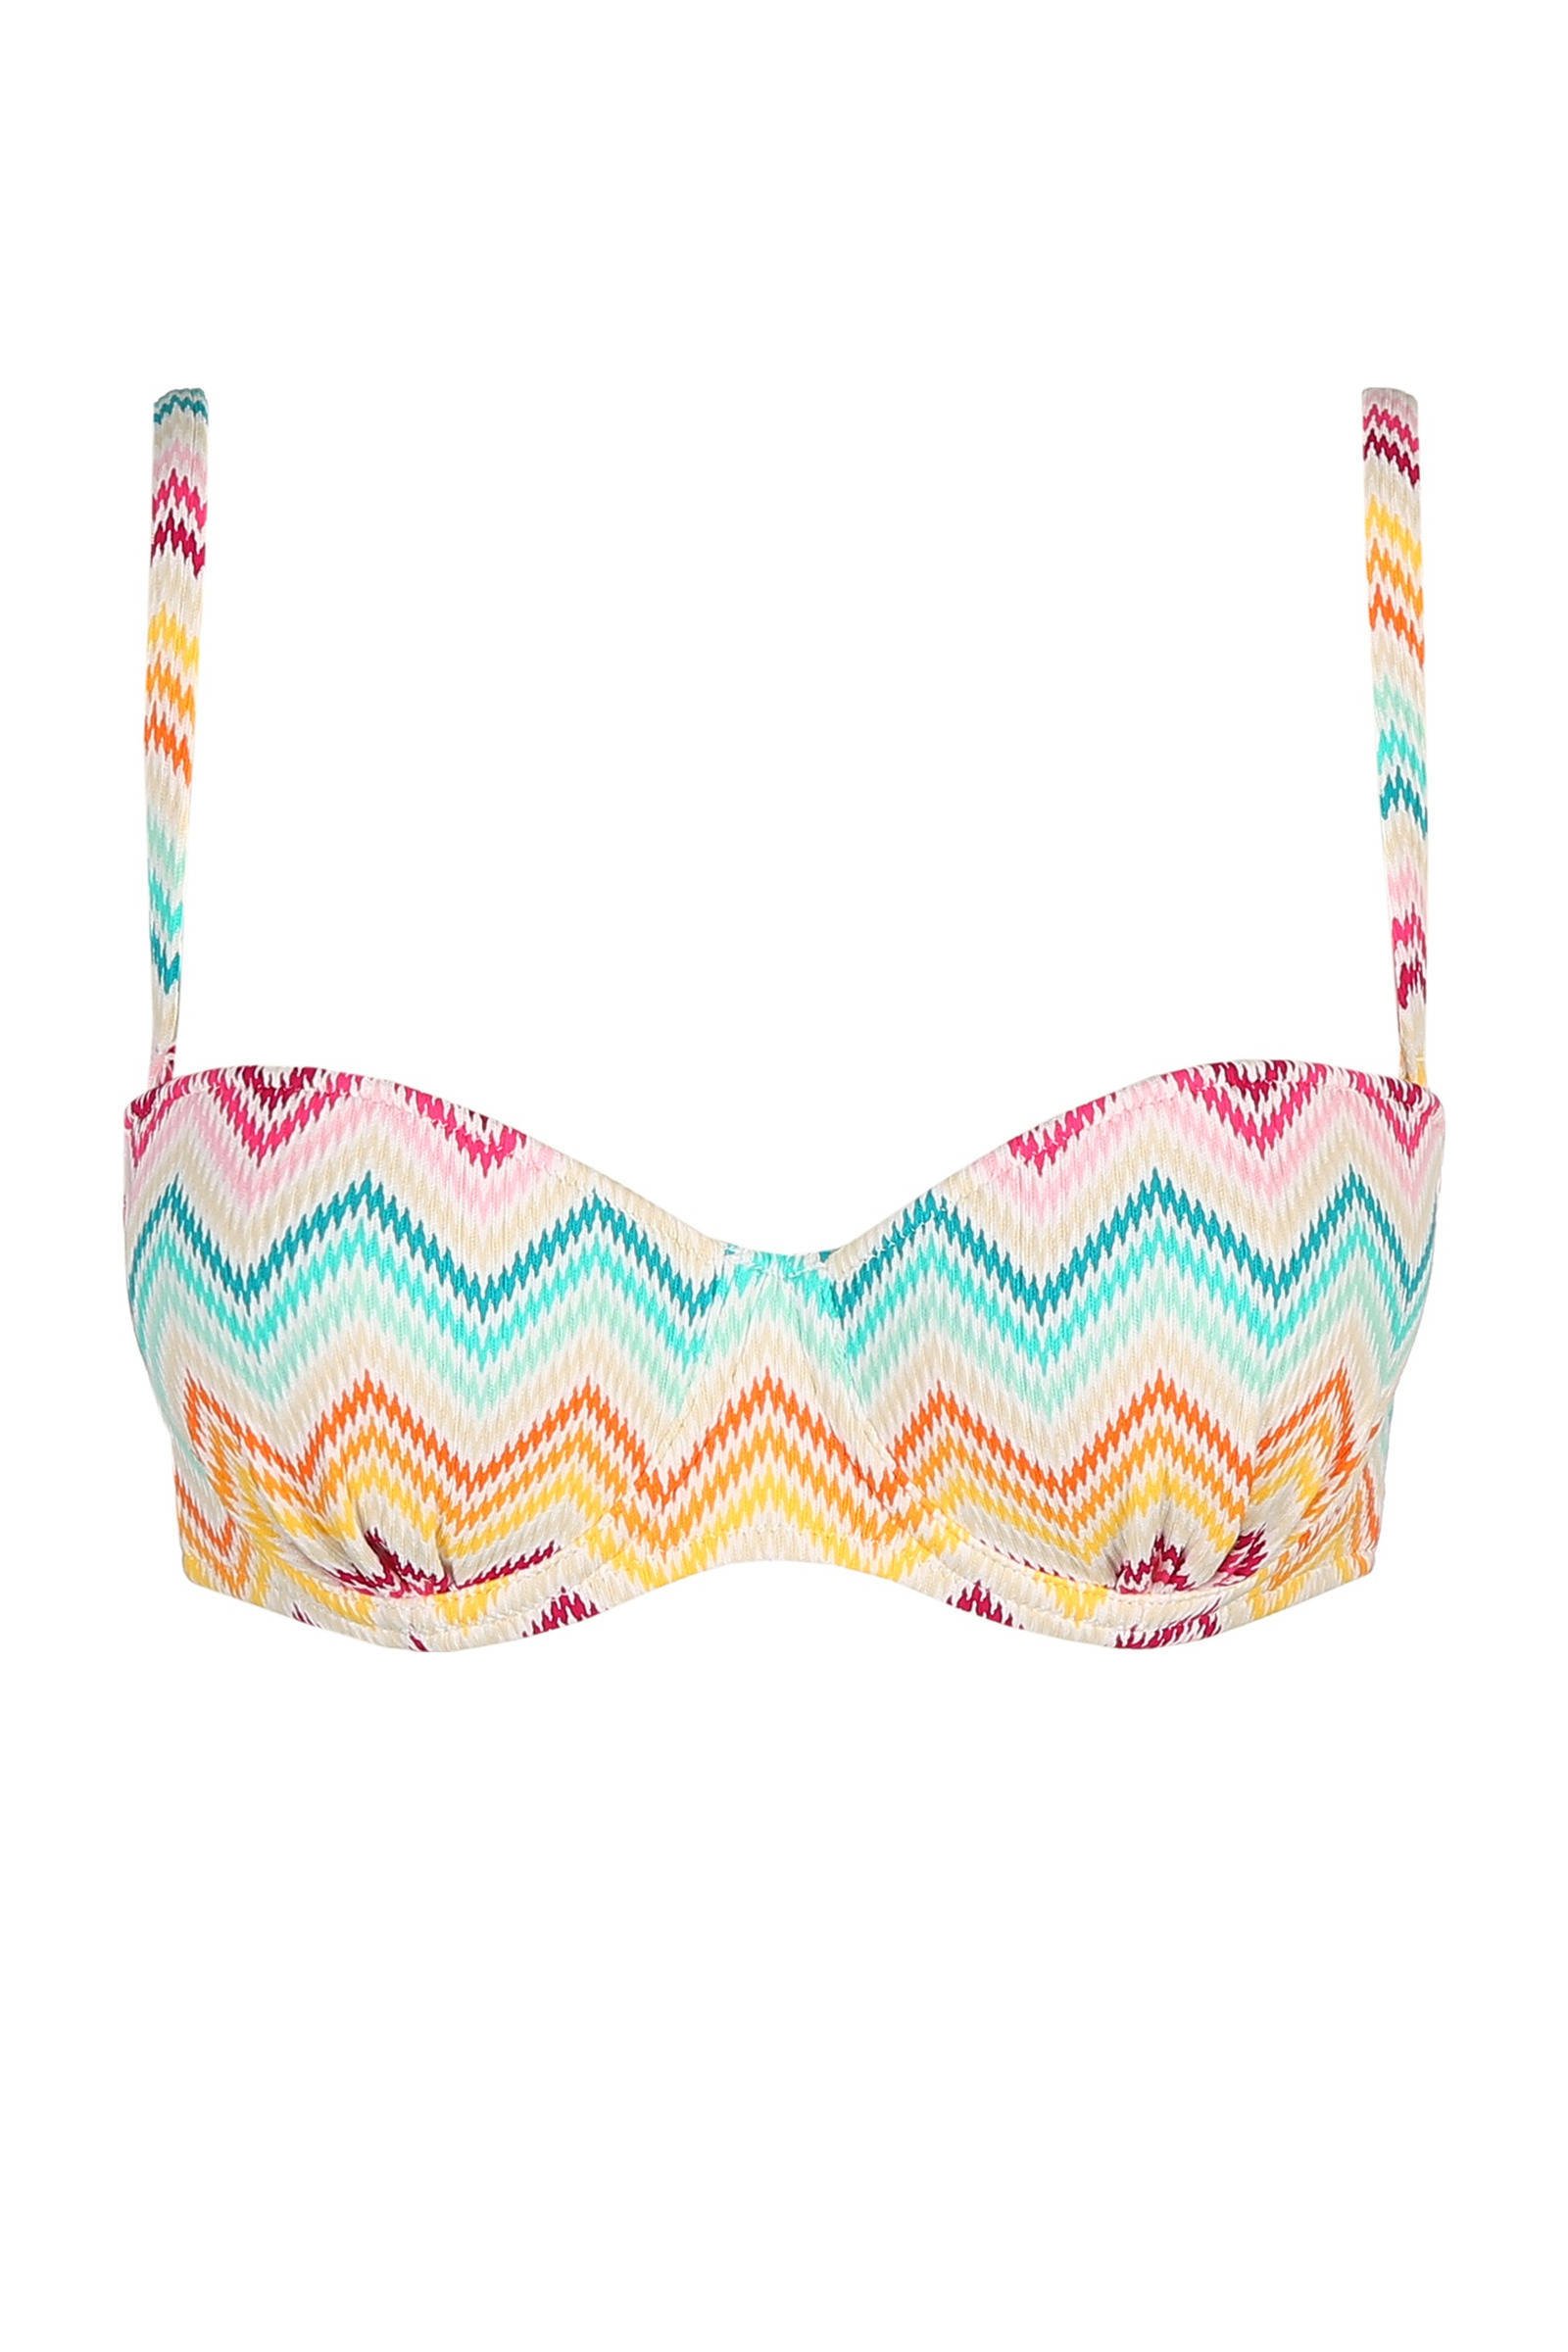 Marie Jo strapless bandeau bikinitop Camila wit/roze/blauw online kopen